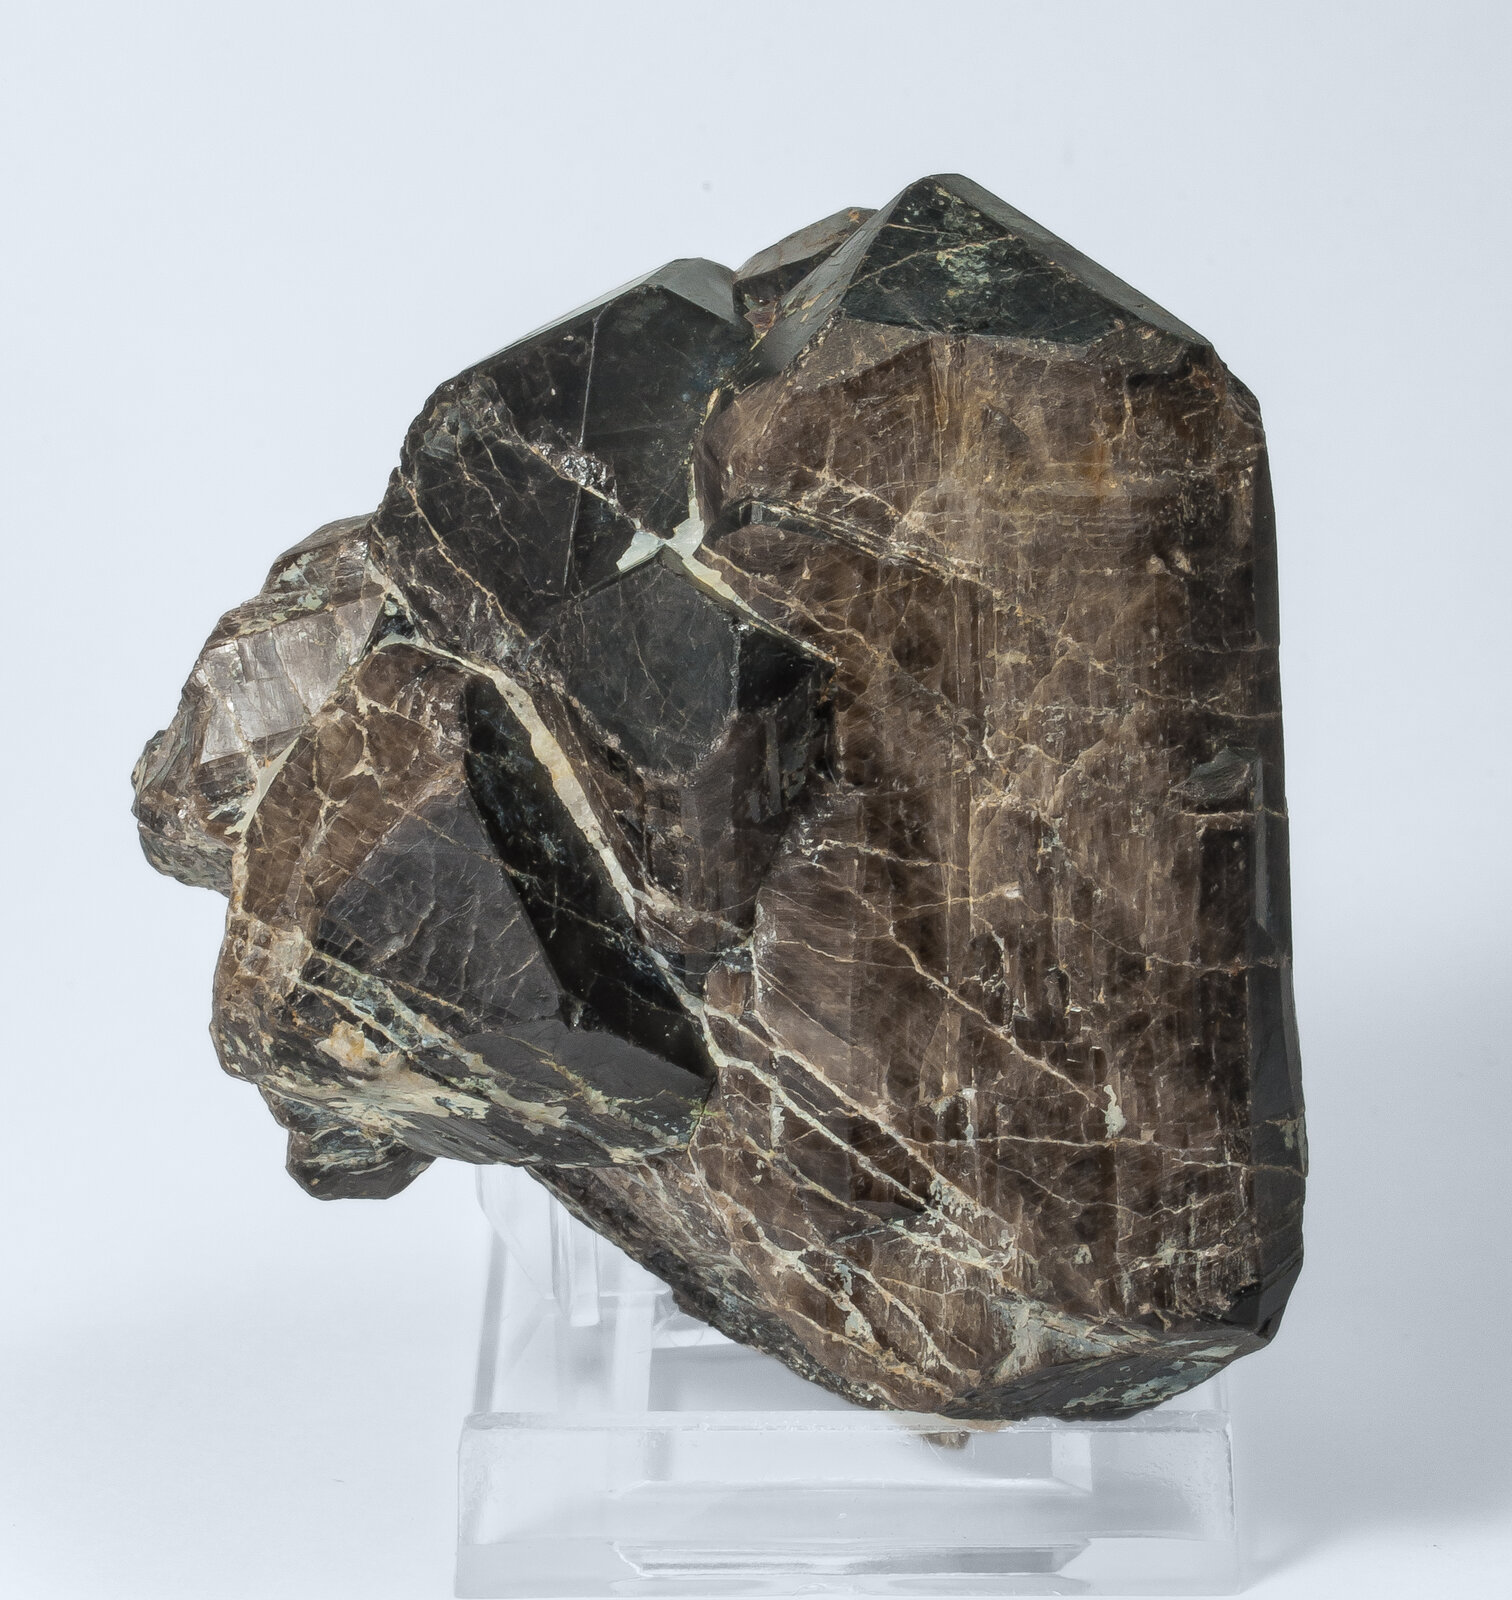 specimens/s_imagesAO9/Cassiterite-ELR66AO9f.jpg